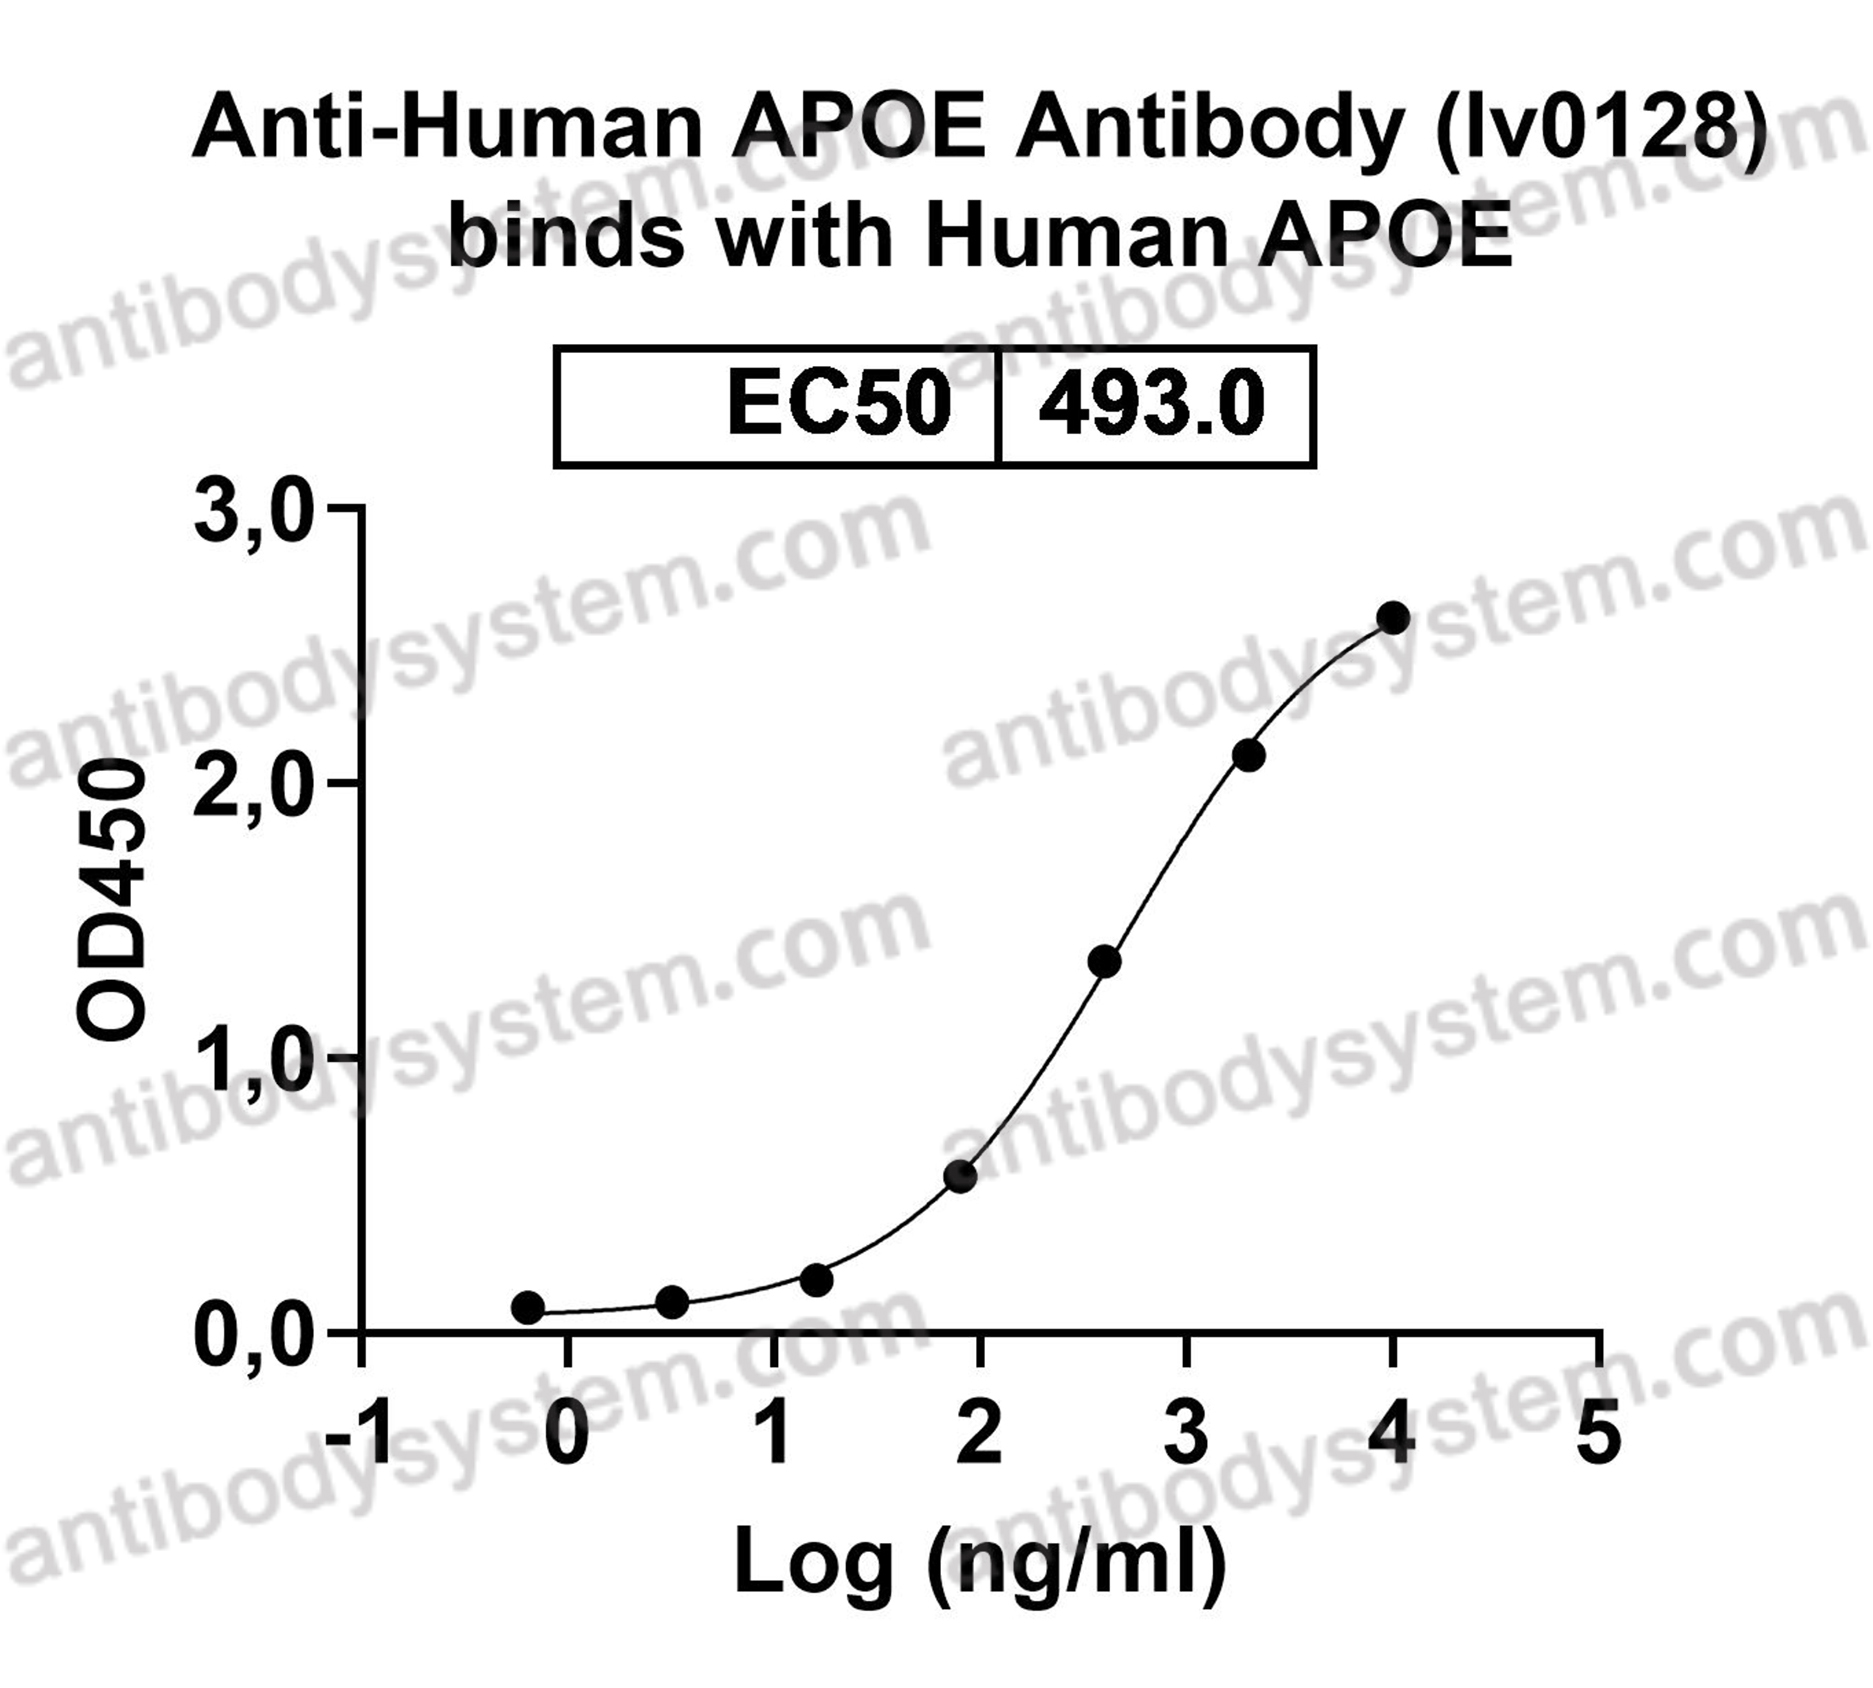 InVivoMAb Anti-Human APOE Antibody (Iv0128)